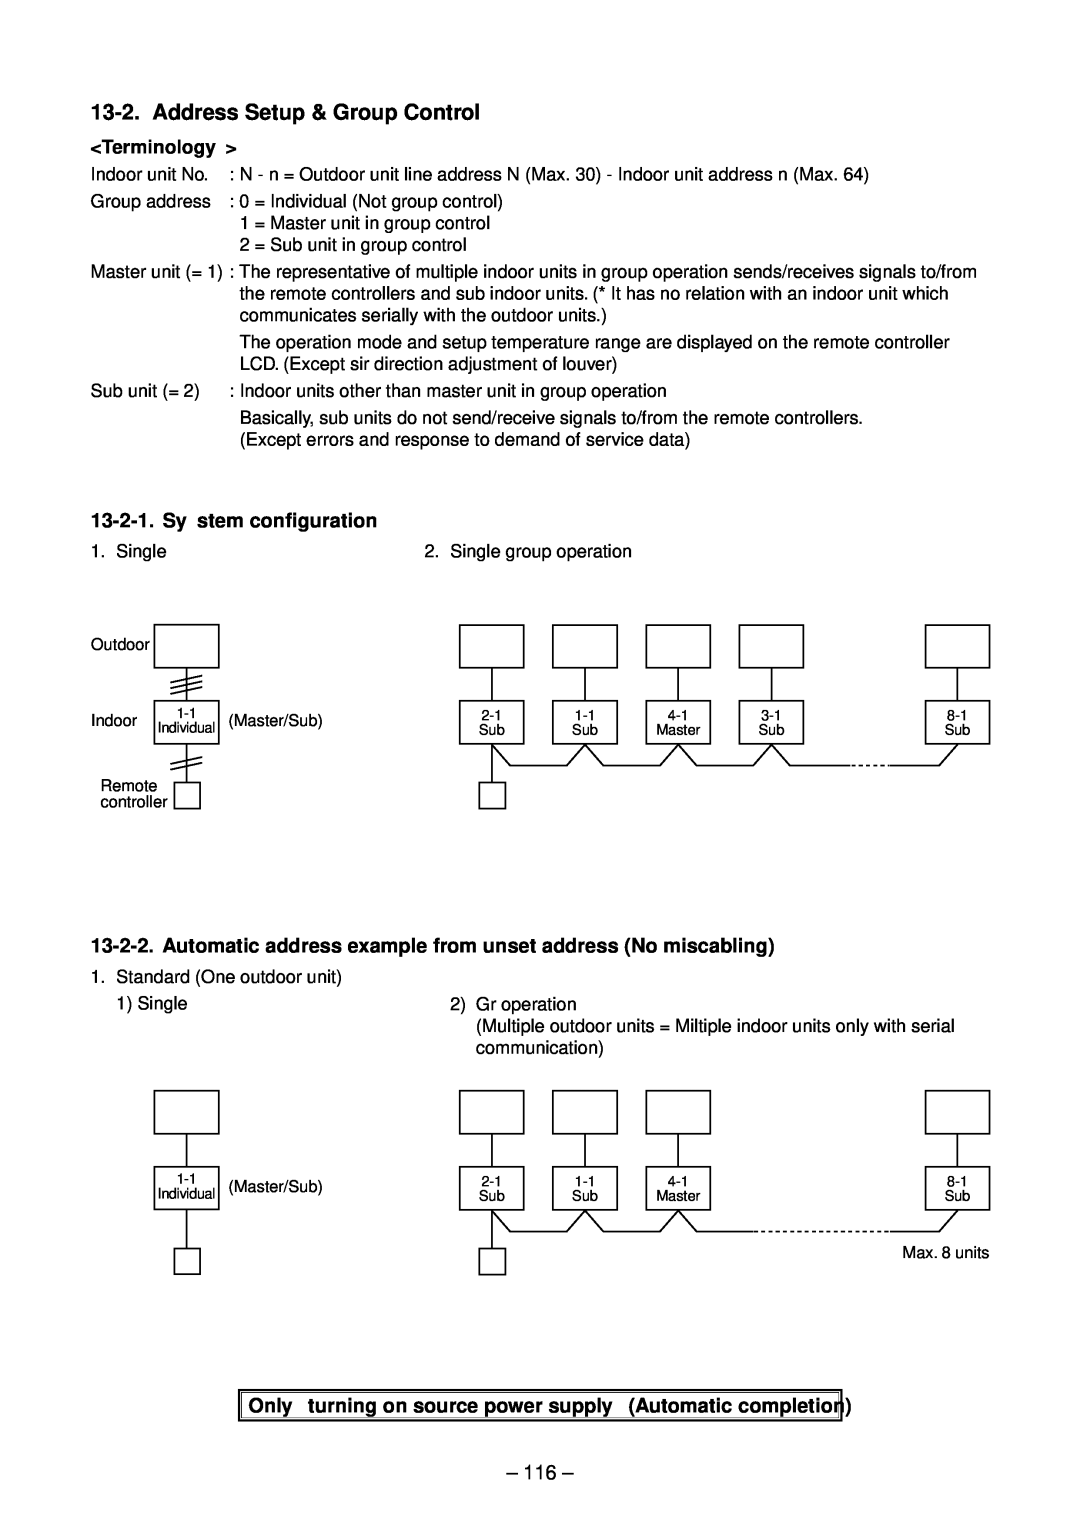 Toshiba RAV-SM1102UT-E, RAV-SM1402UT-E, RAV-SM802UT-E, RAV-SM562UT-E Address Setup & Group Control, Sy stem configuration 